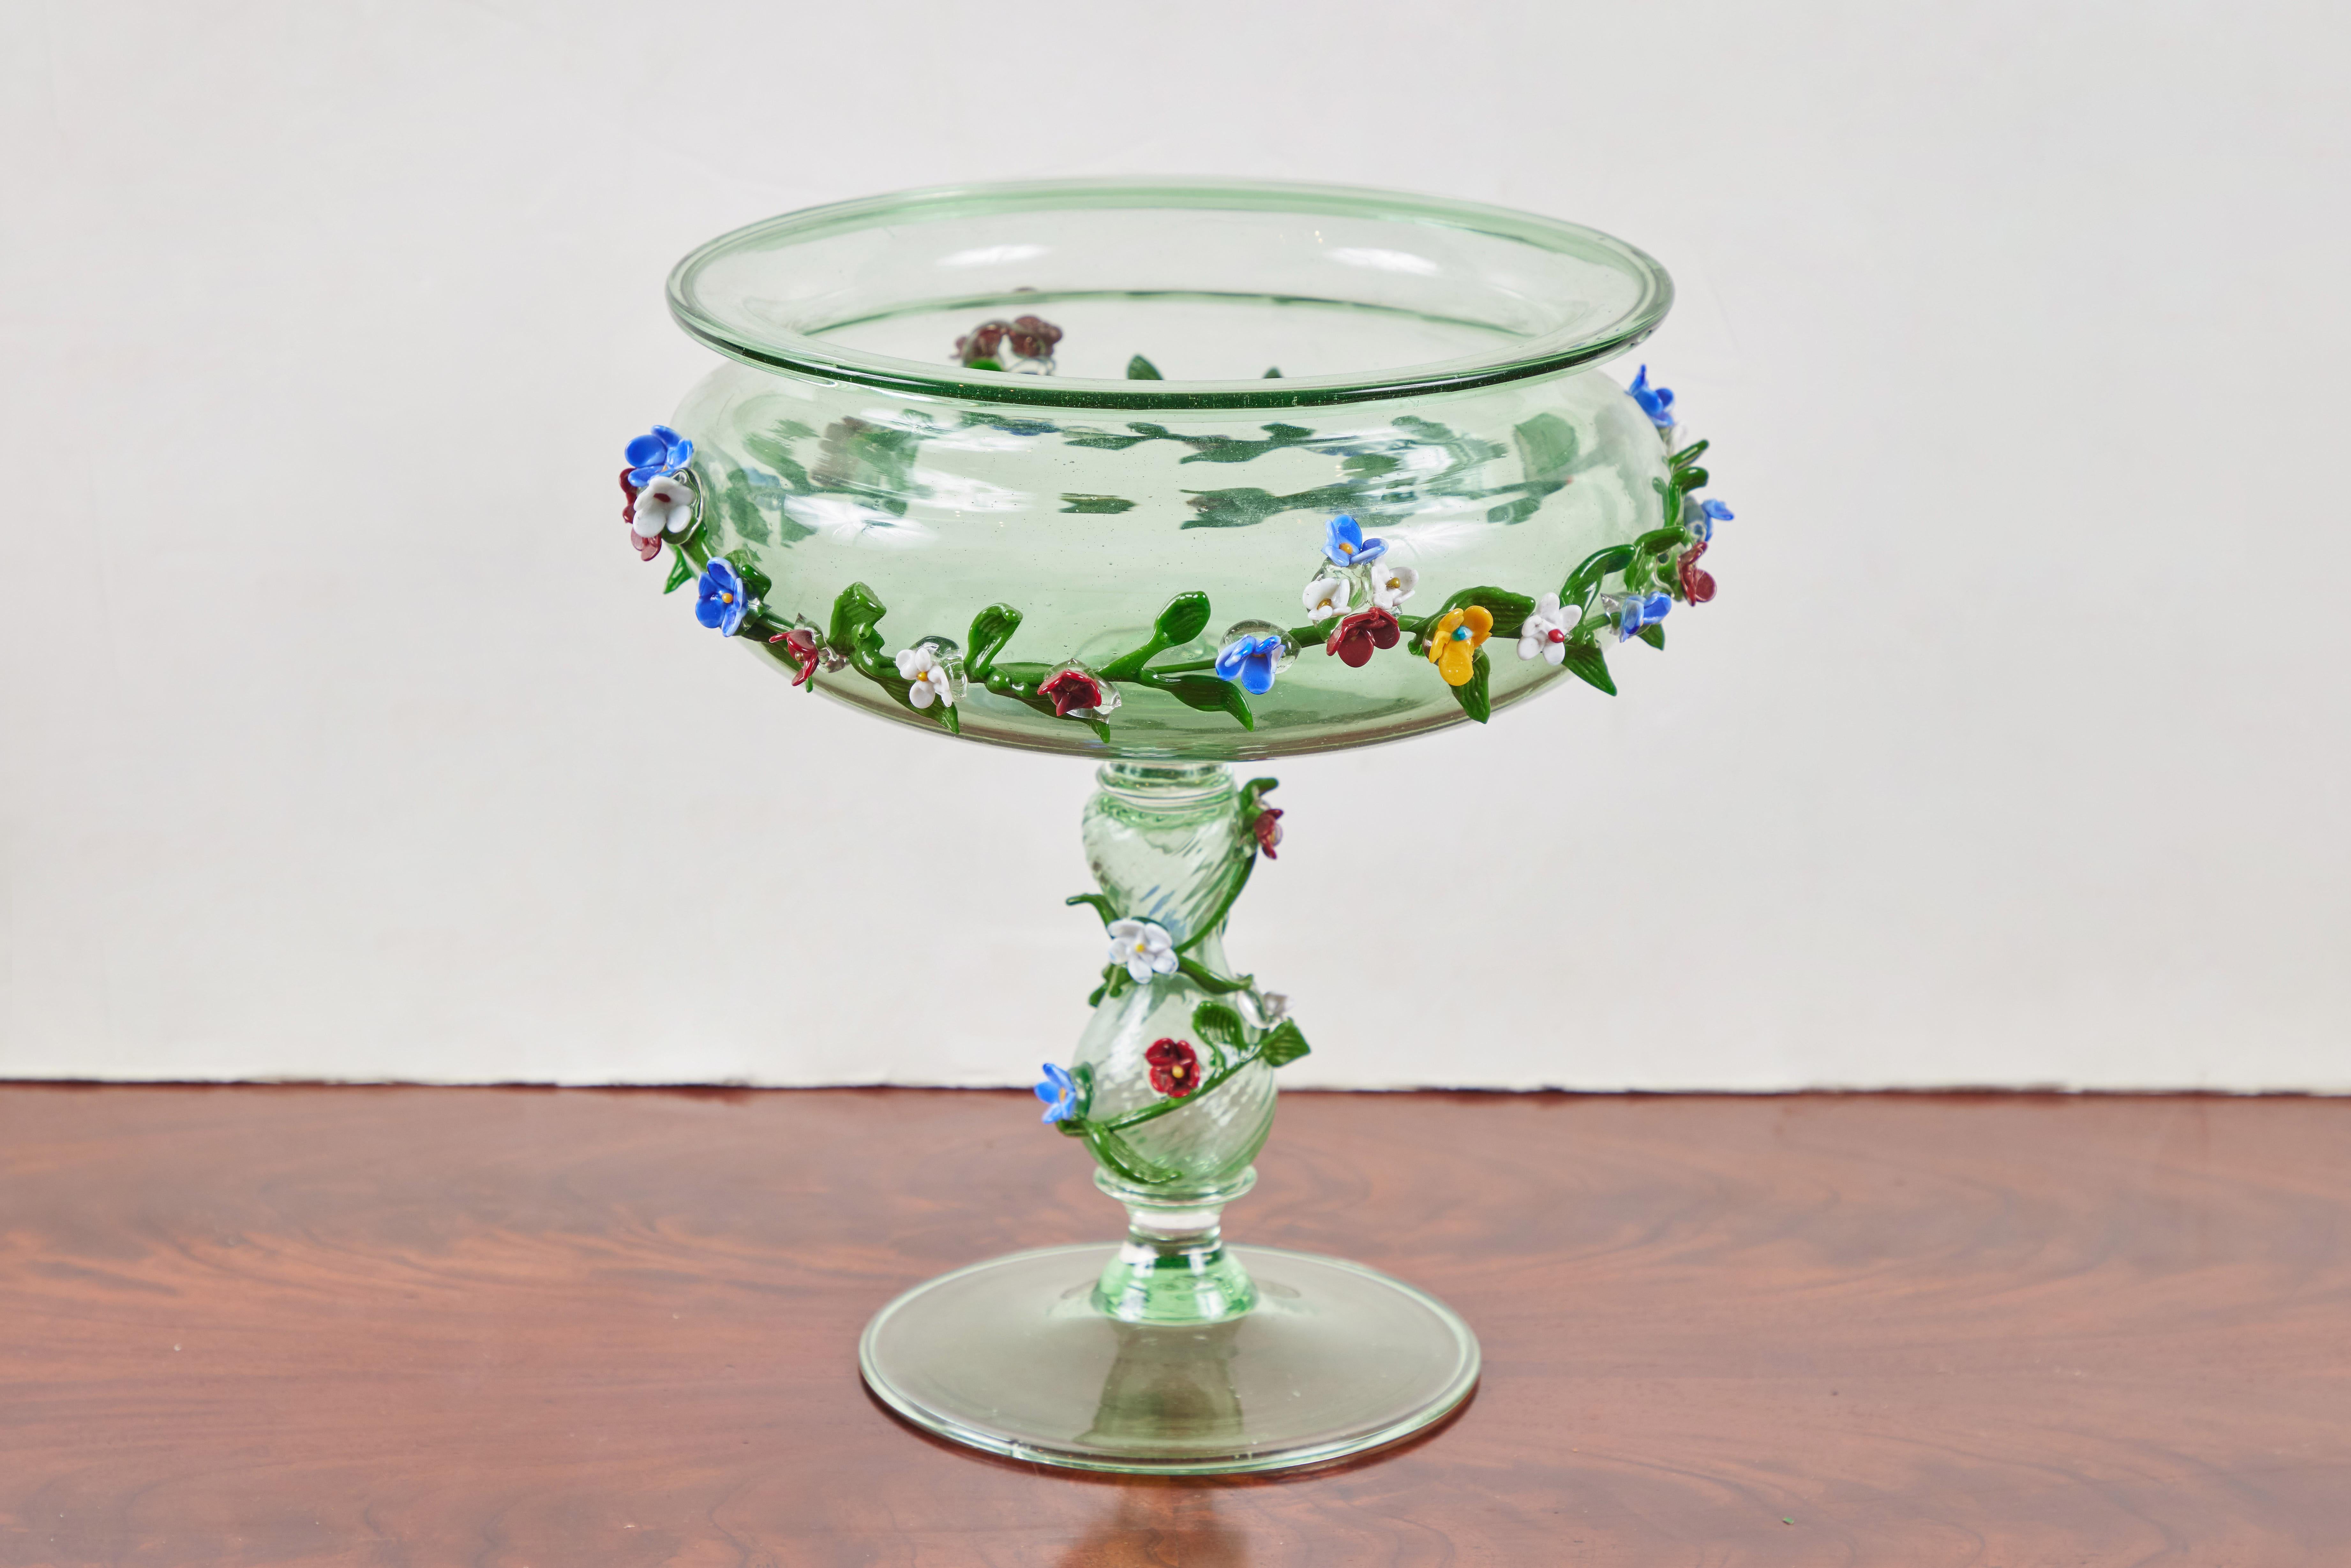 Hübsche, um 1920, mundgeblasene Tazza aus Murano-Glas in frischem Frühlingsgrün. Die lippenförmige Schale ist mit einer applizierten Girlande aus individuell geformten Blüten und Blättern in verschiedenen Farben geschmückt, die sich am Stiel